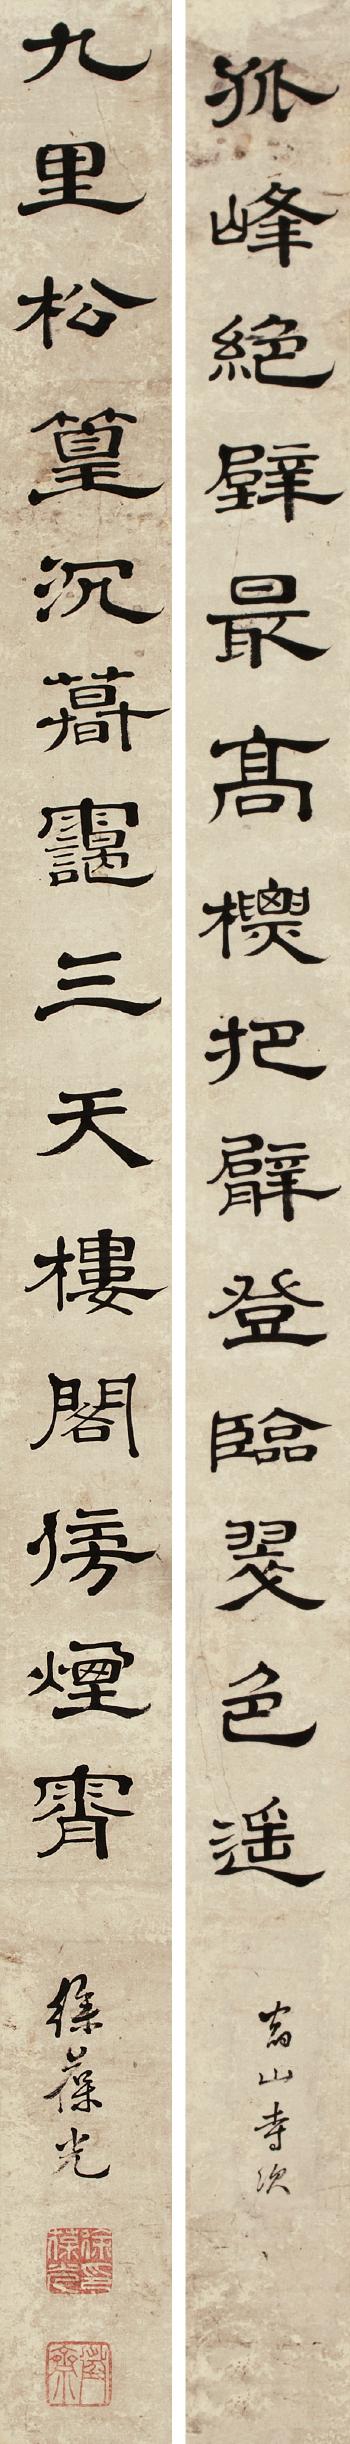 Calligraphy by 
																	 Xu Baoguang